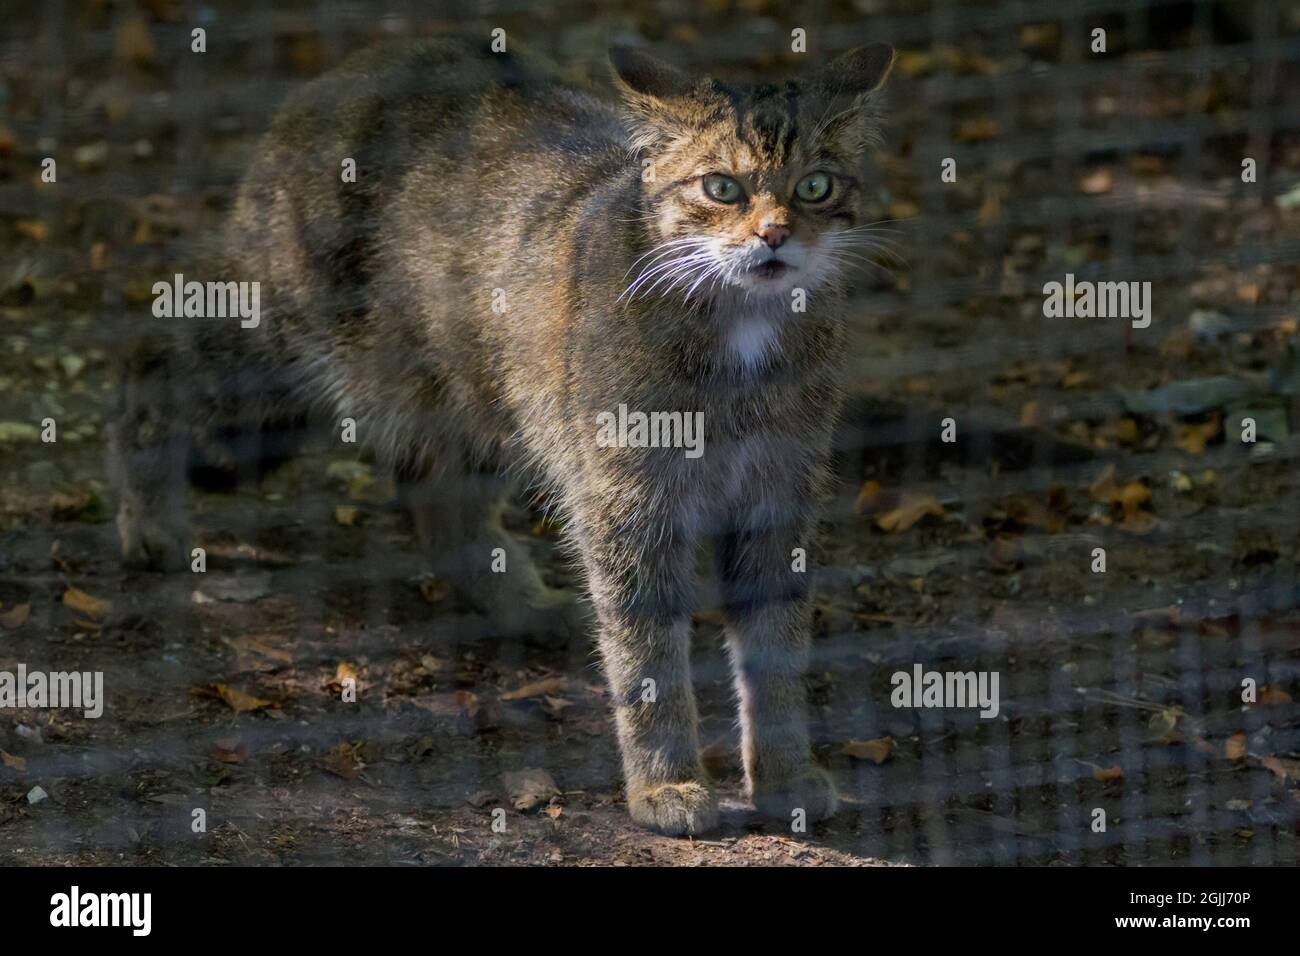 Schottische Wildkatze (Felix sylvestris) gefangen ähnlich einer Tabby-Katze mit großem buschigen, stumpfen Schwanz mit dunklen Ringen, Körper hat auch dunkle Streifenmarkierungen Stockfoto